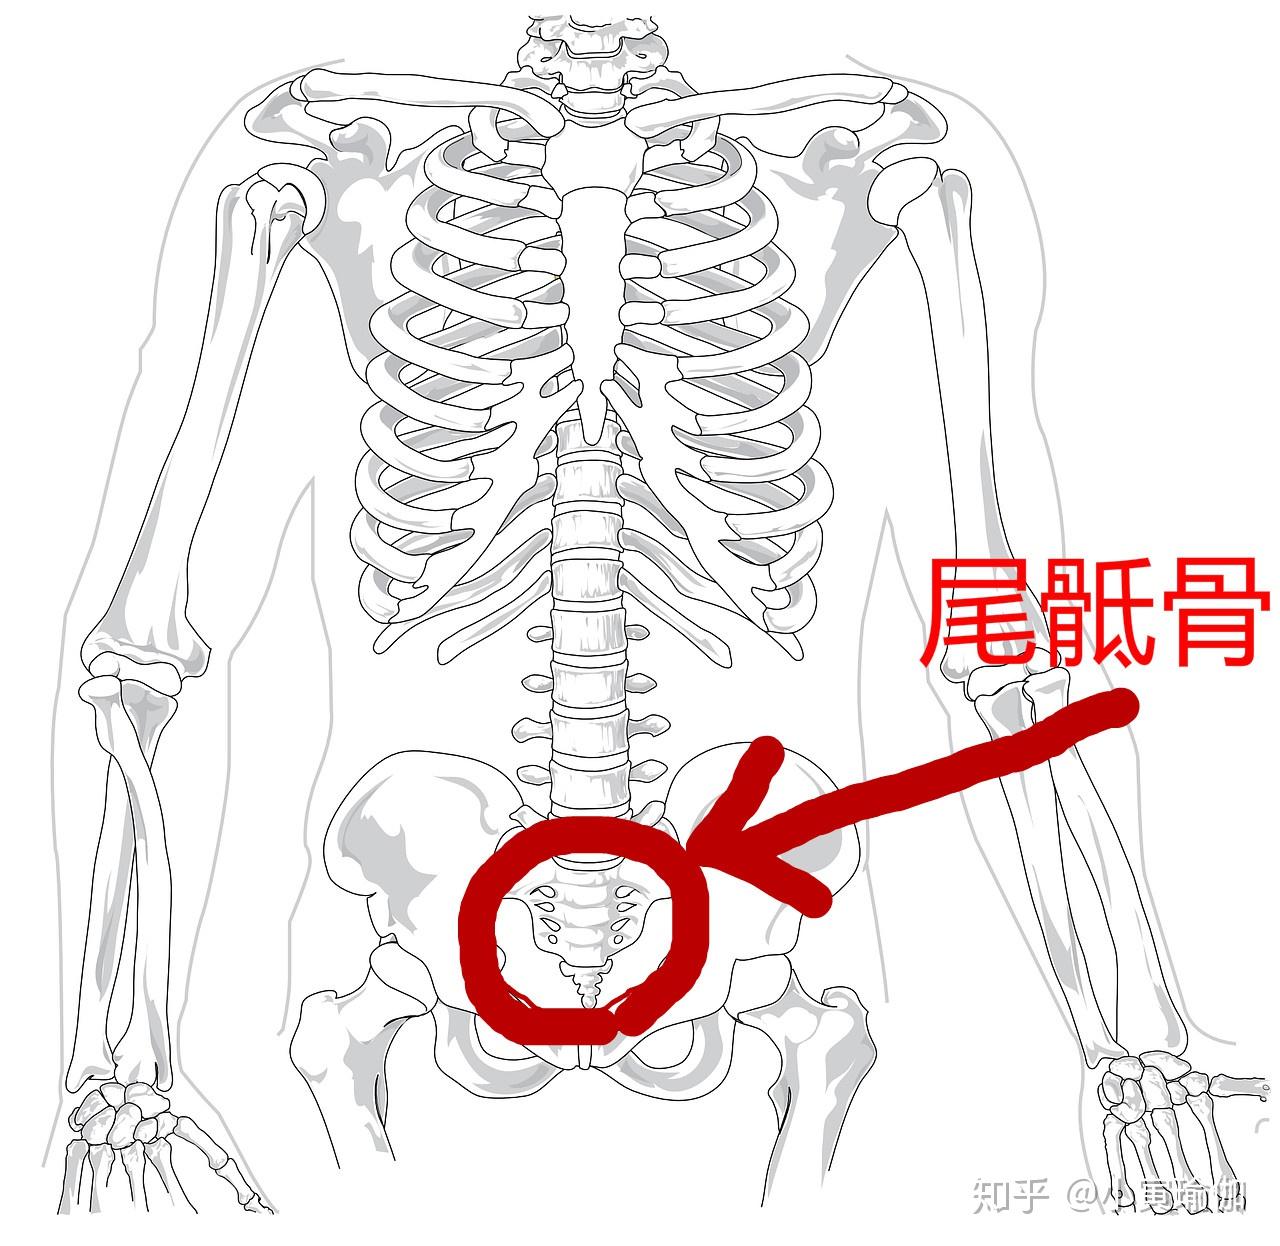 如下图:这股能量卷曲在我们的尾骶骨区域,就是整条脊柱的最底端